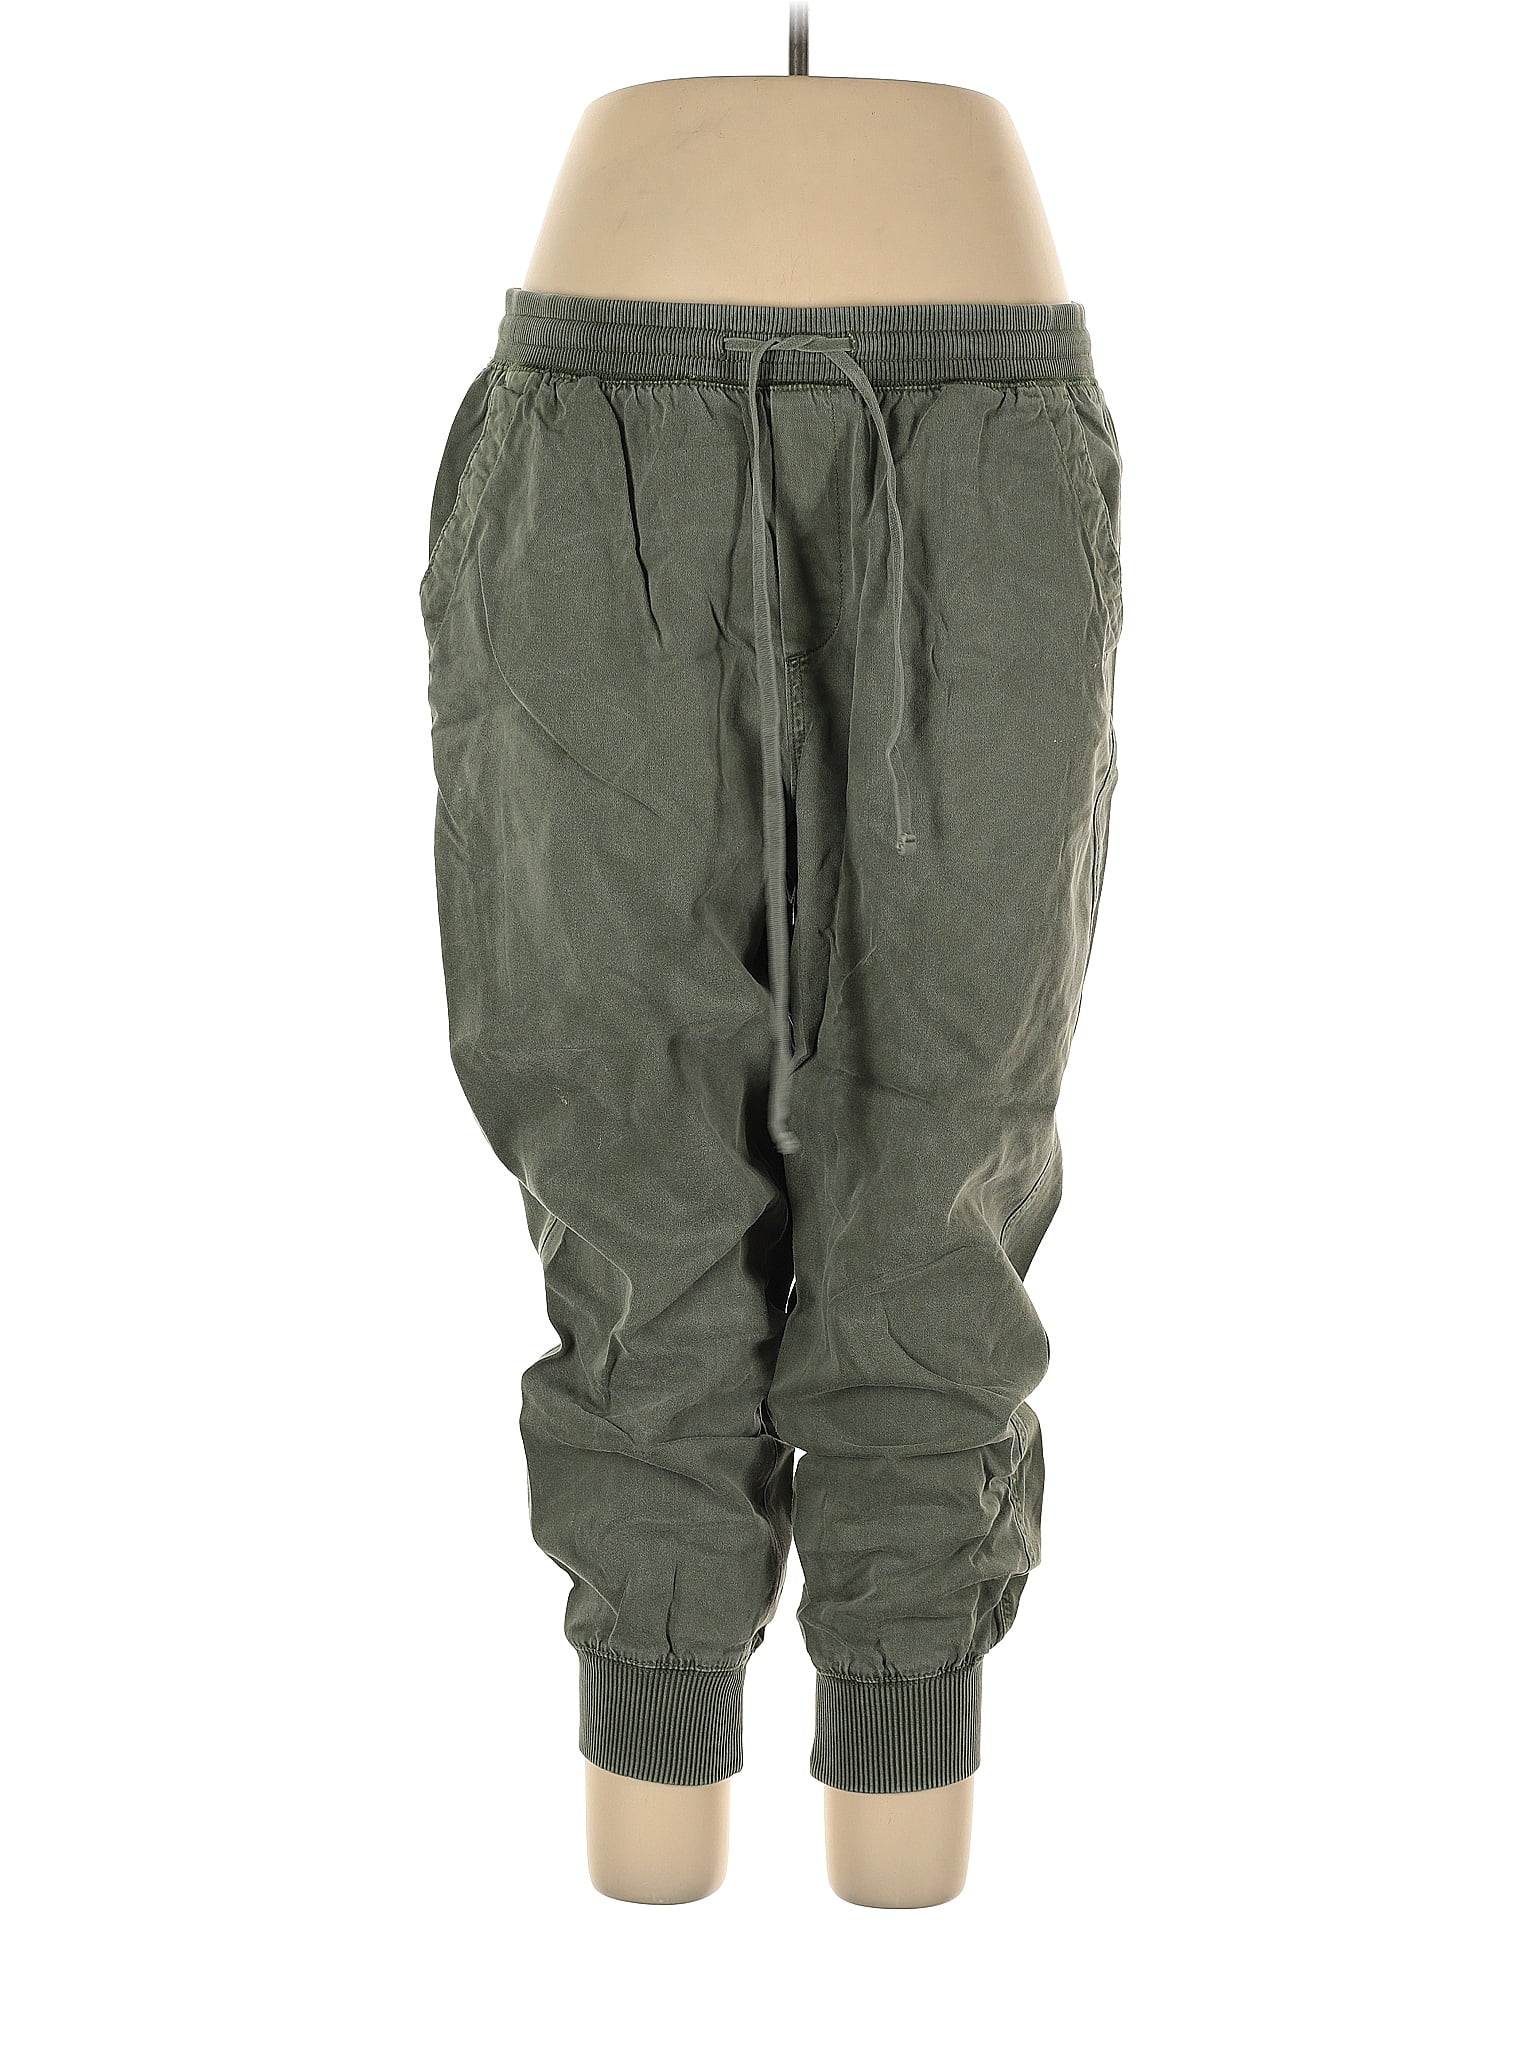 Lou & Grey Green Sweatpants Size XL - 52% off